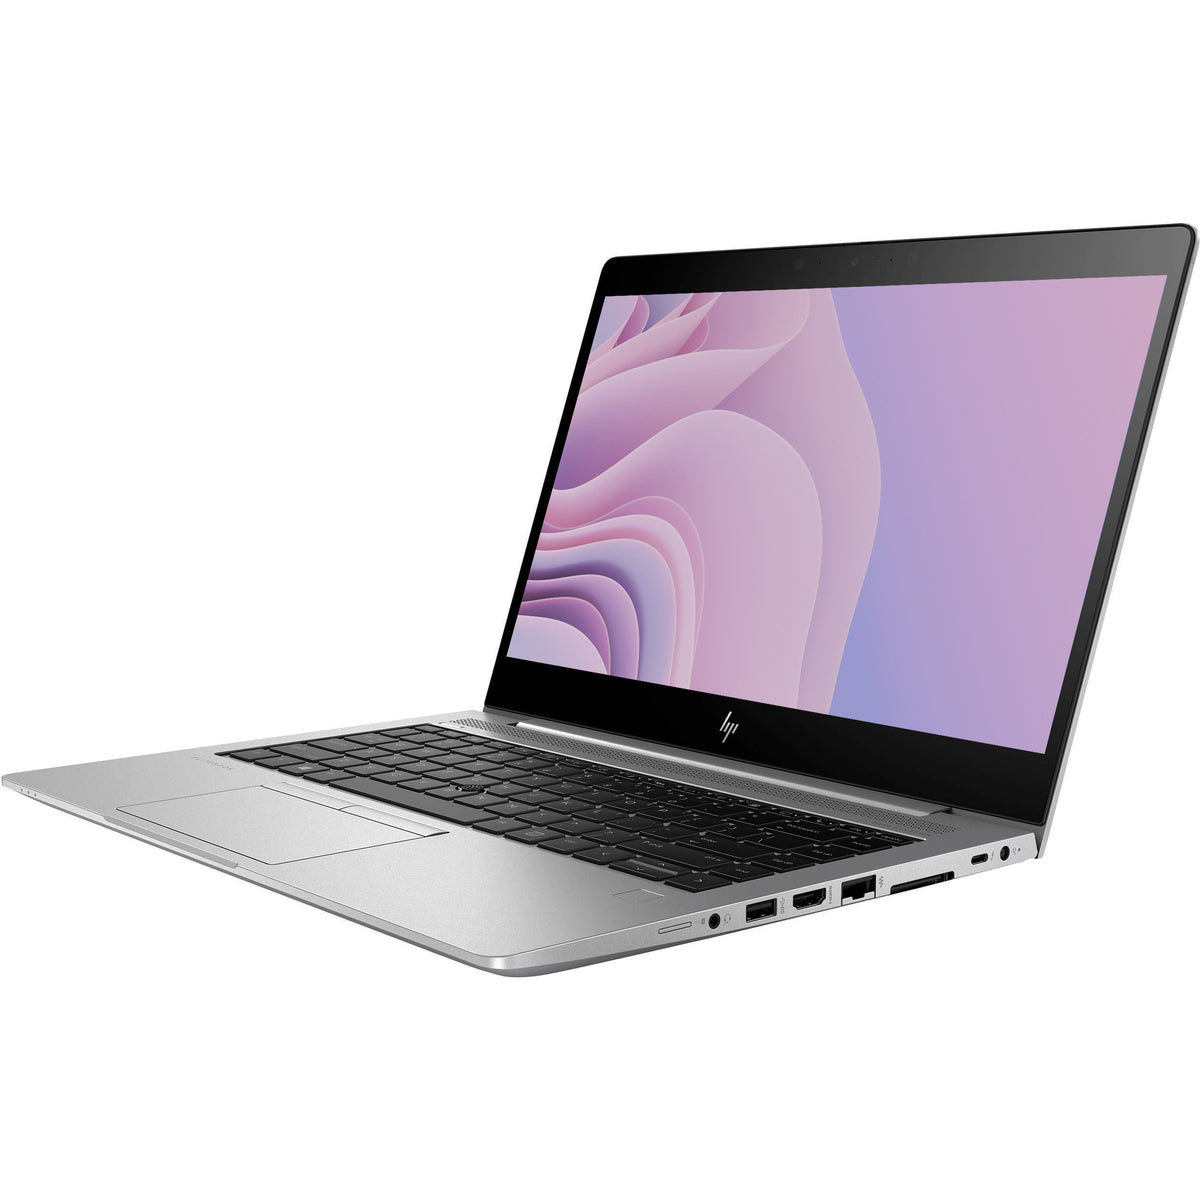 HP EliteBook 840 G6 – Deluxe PCs